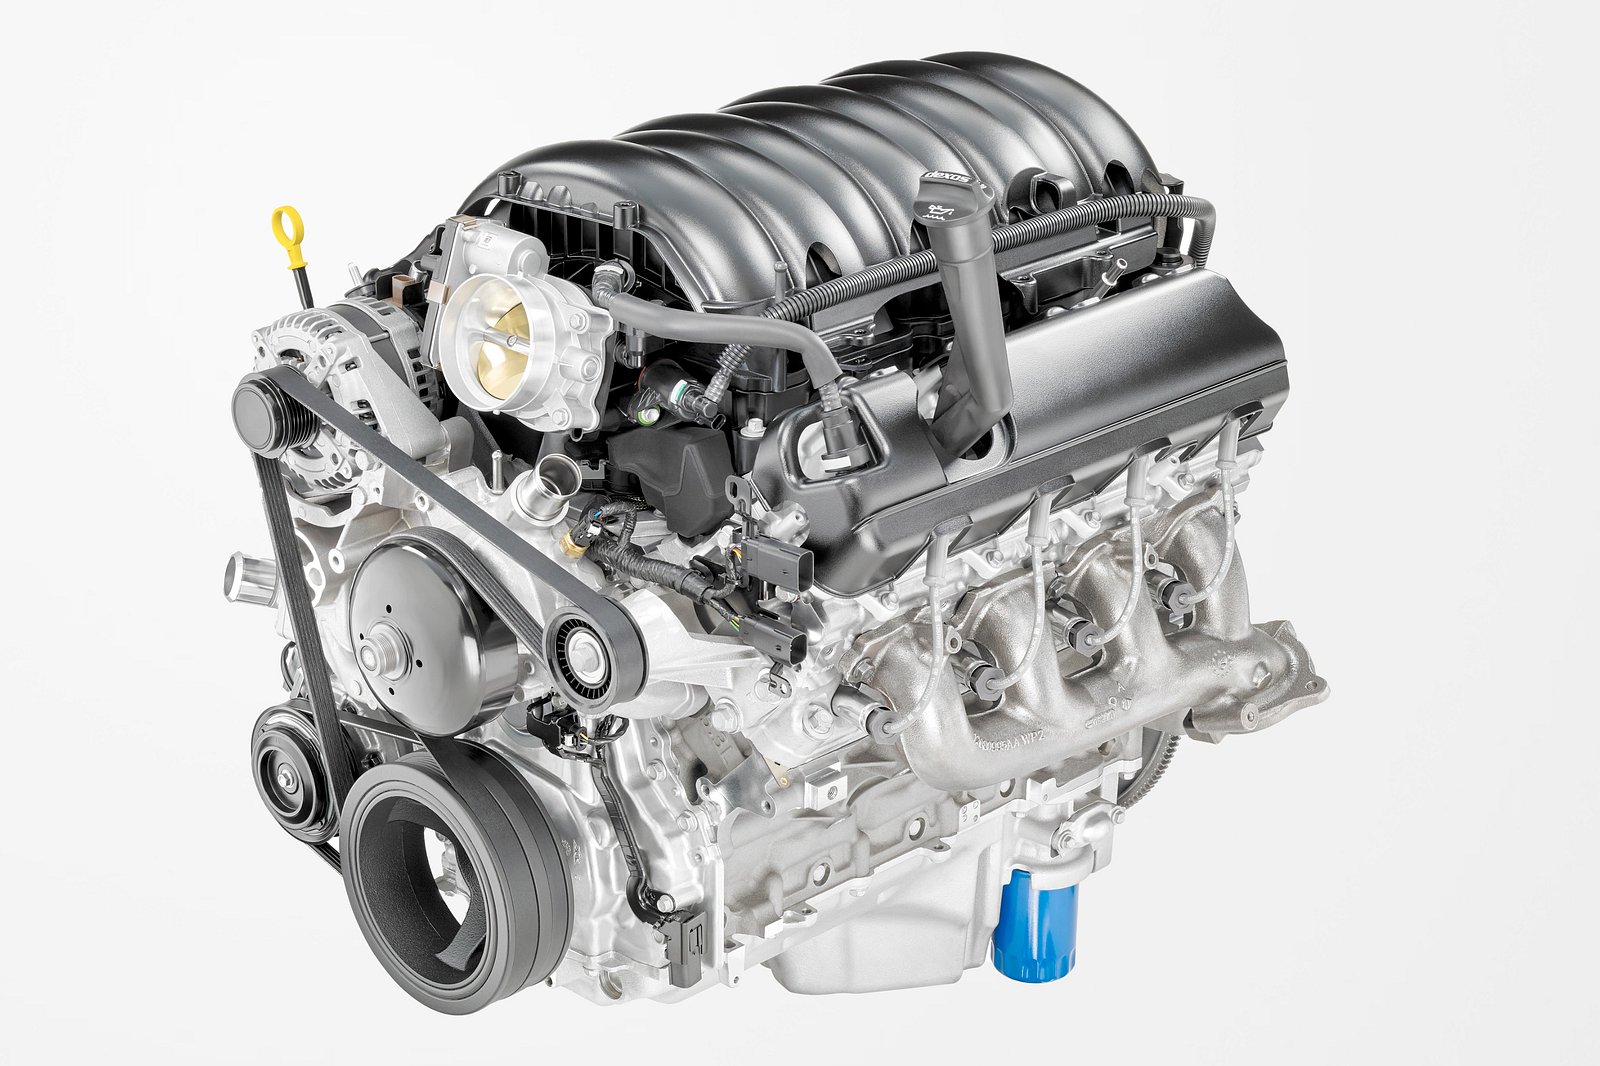 不要低估通用汽车 6.2 V8 L87 发动机的性能-豁天游|活田酉 一个专门分享有趣的信息，激发人们的求知欲。